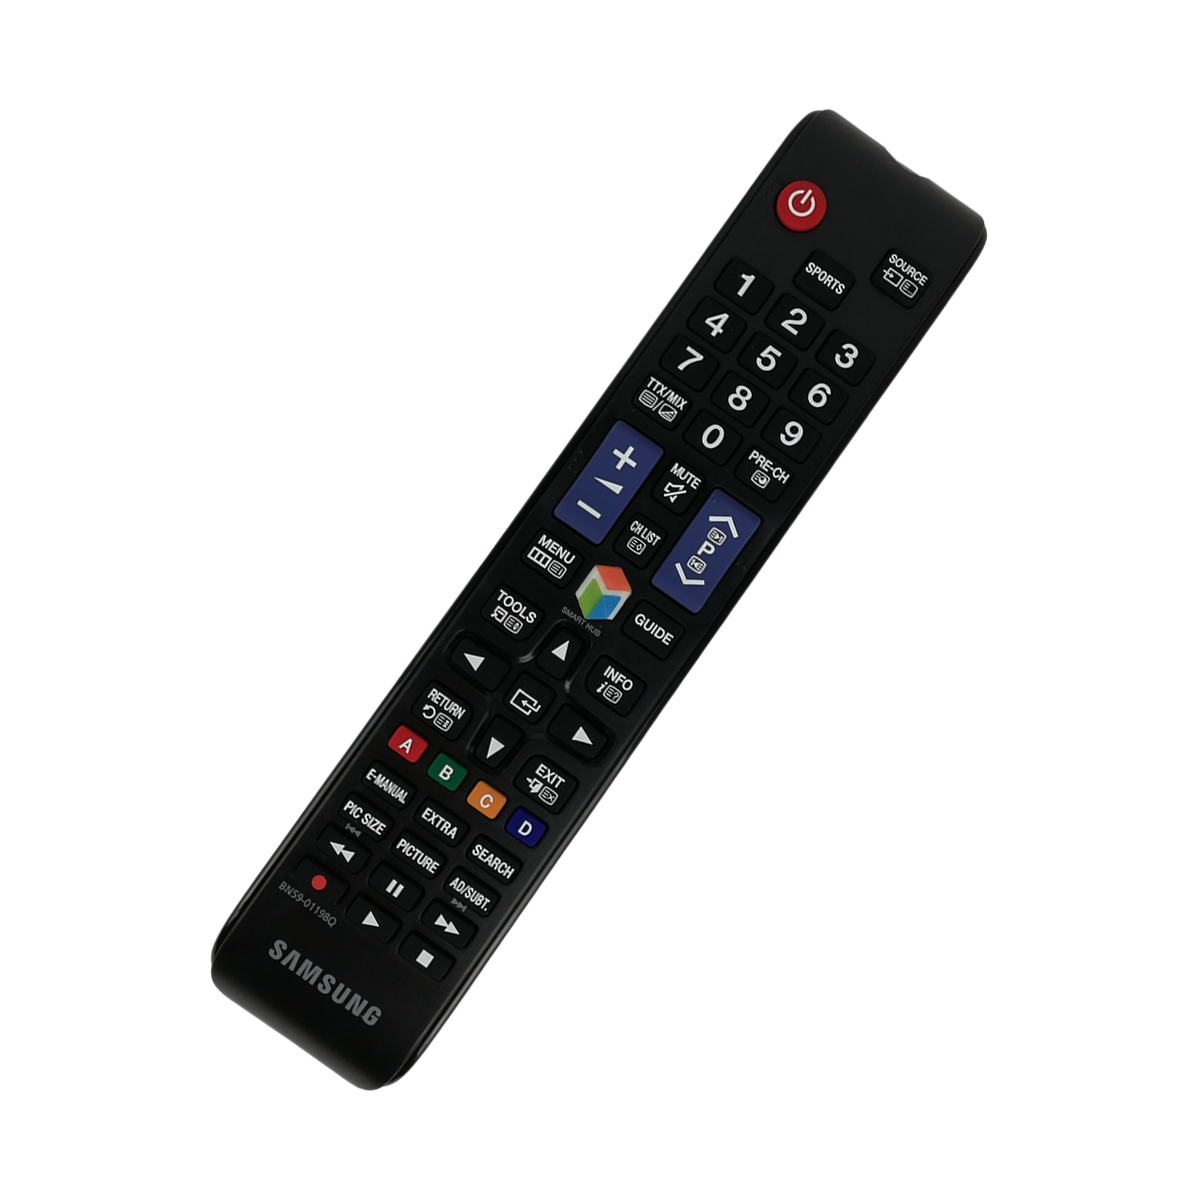 Samsung Original TV Remote Control for Samsung UE55B7050WW Television